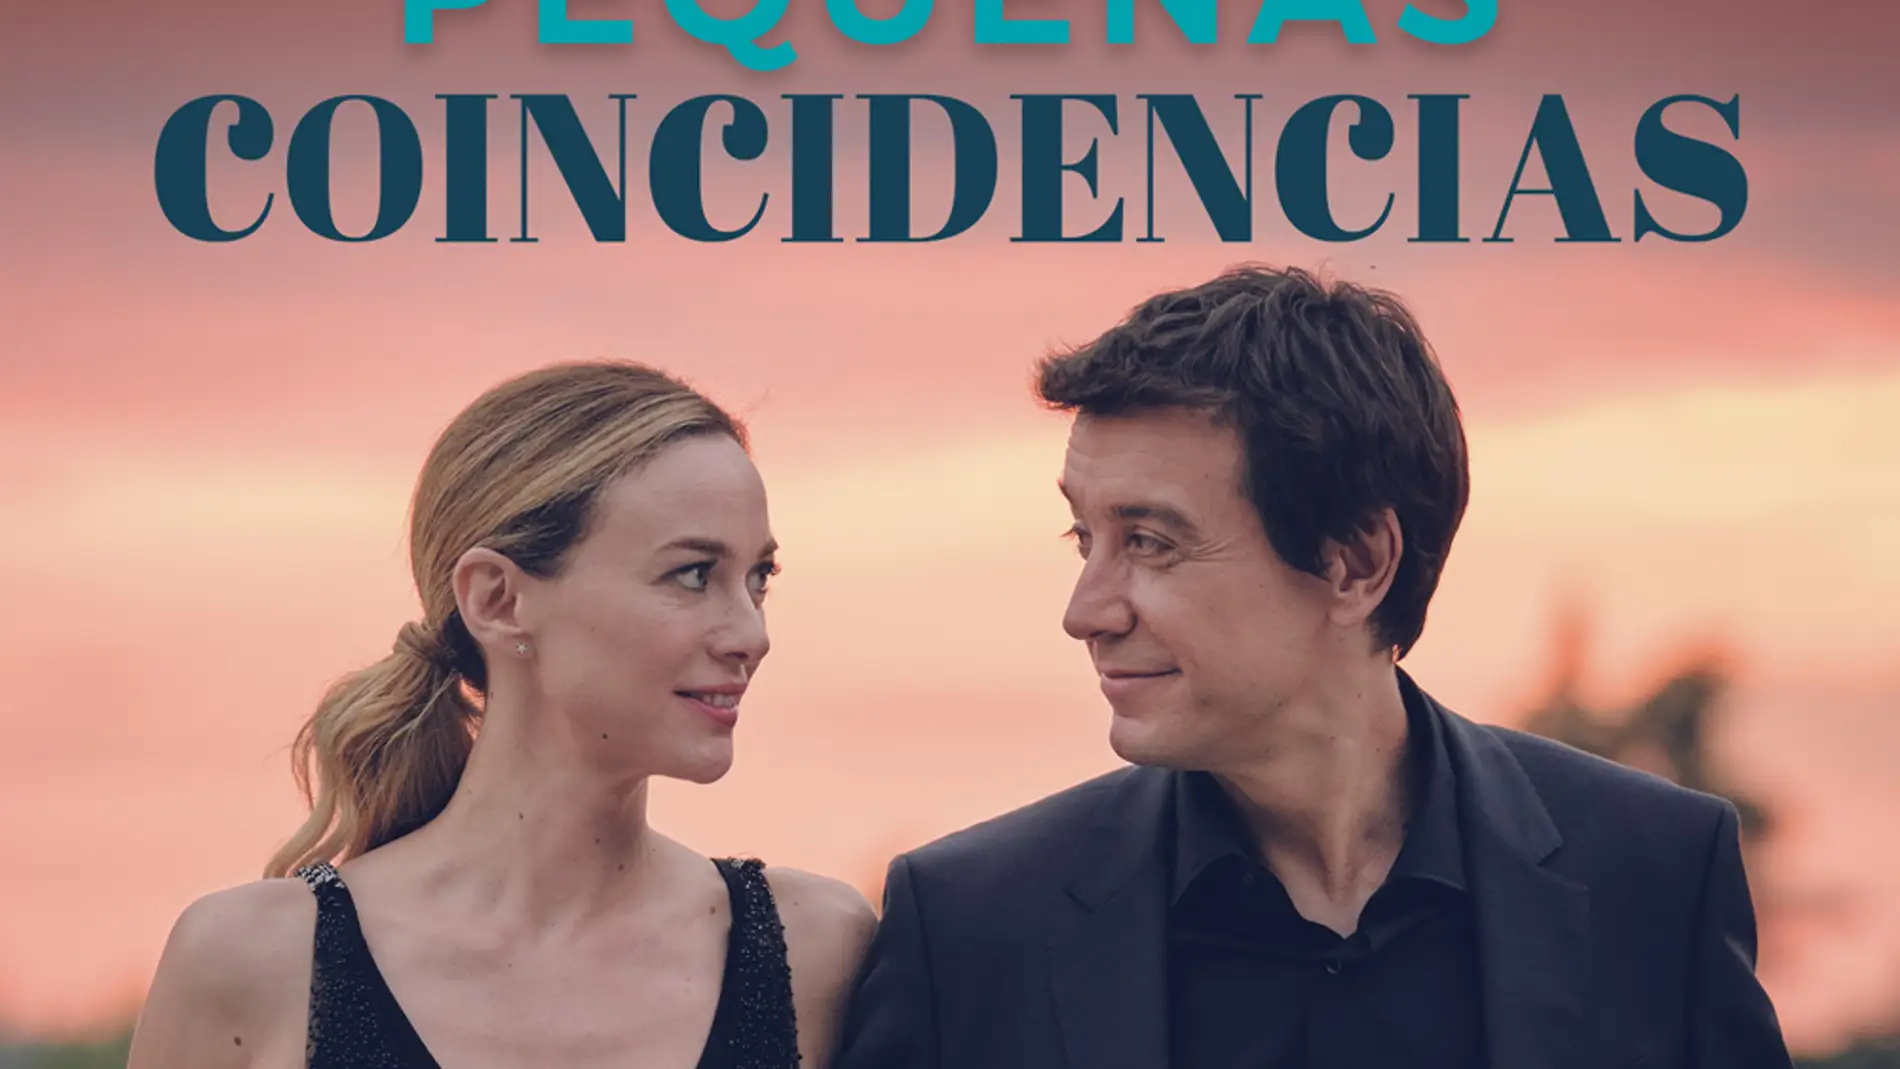 'Pequeñas Coincidencias', estreno el 15 de enero